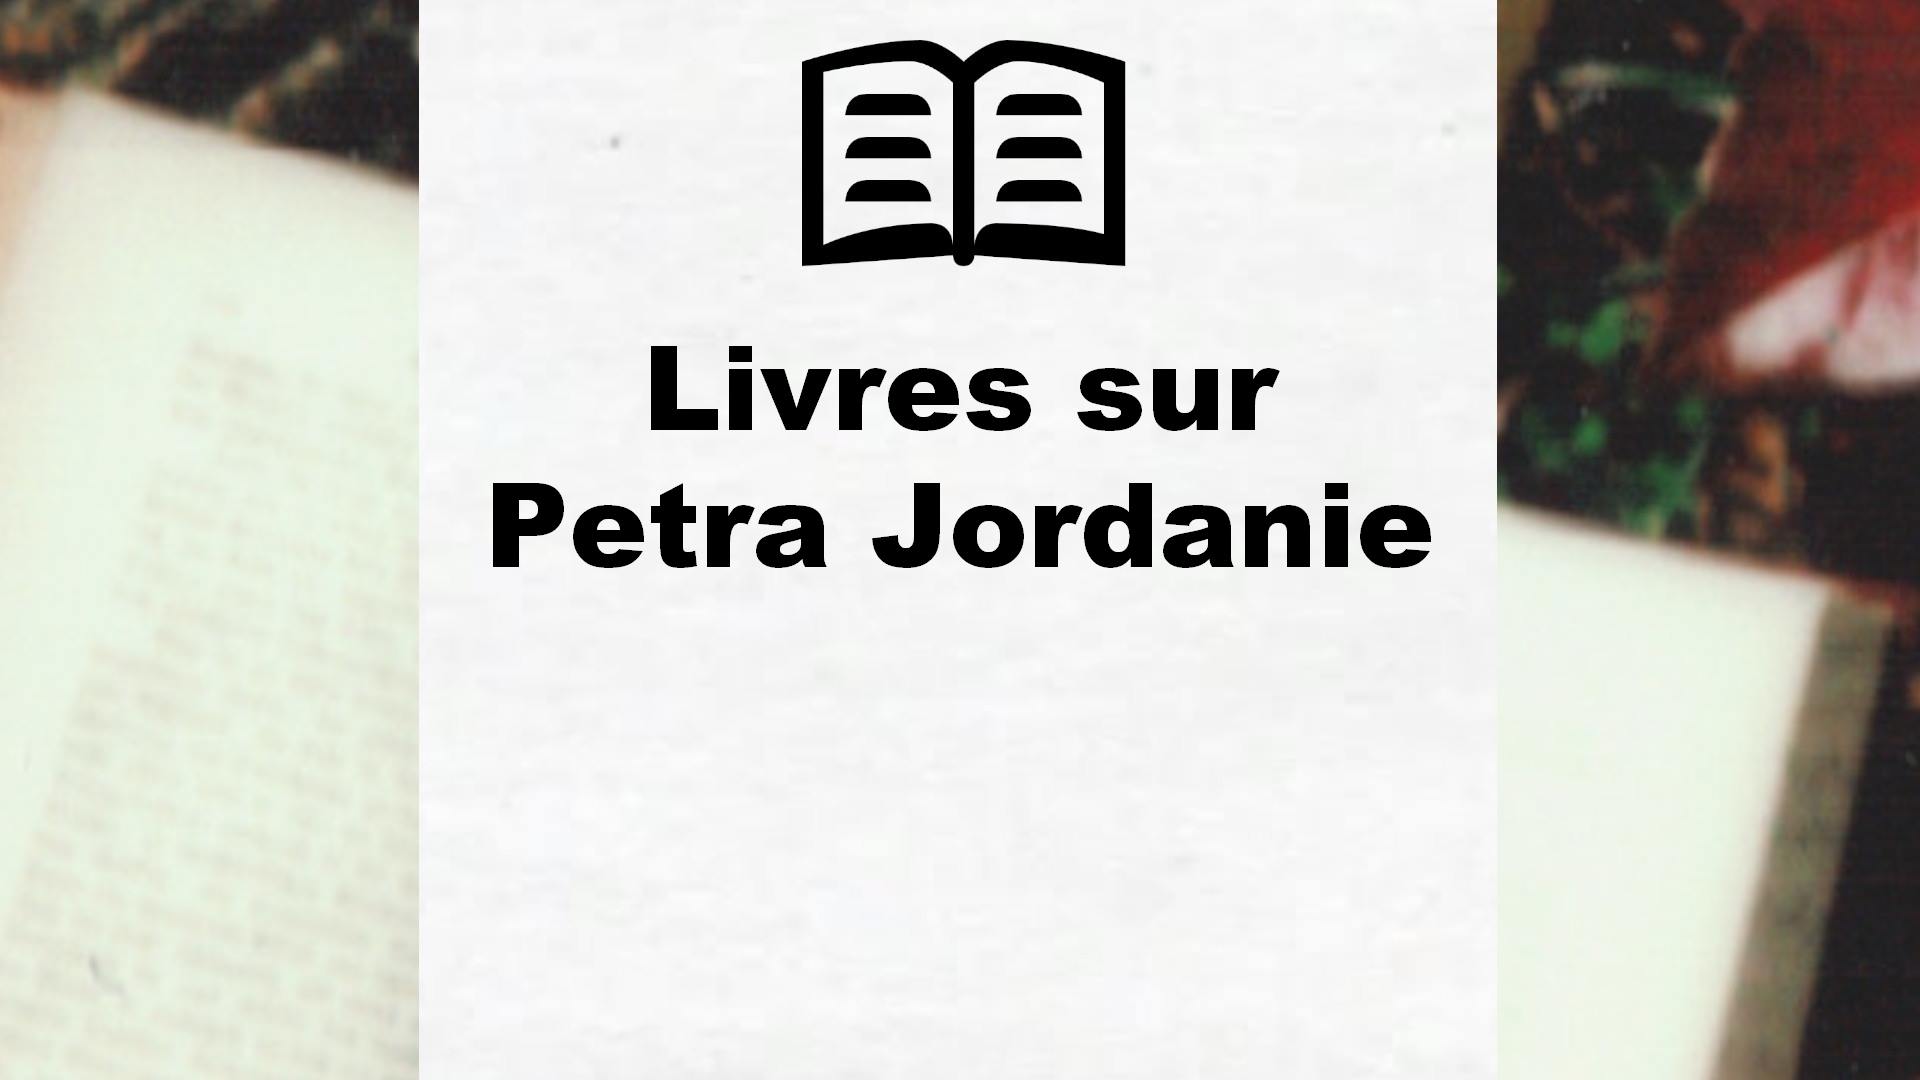 Livres sur Petra Jordanie